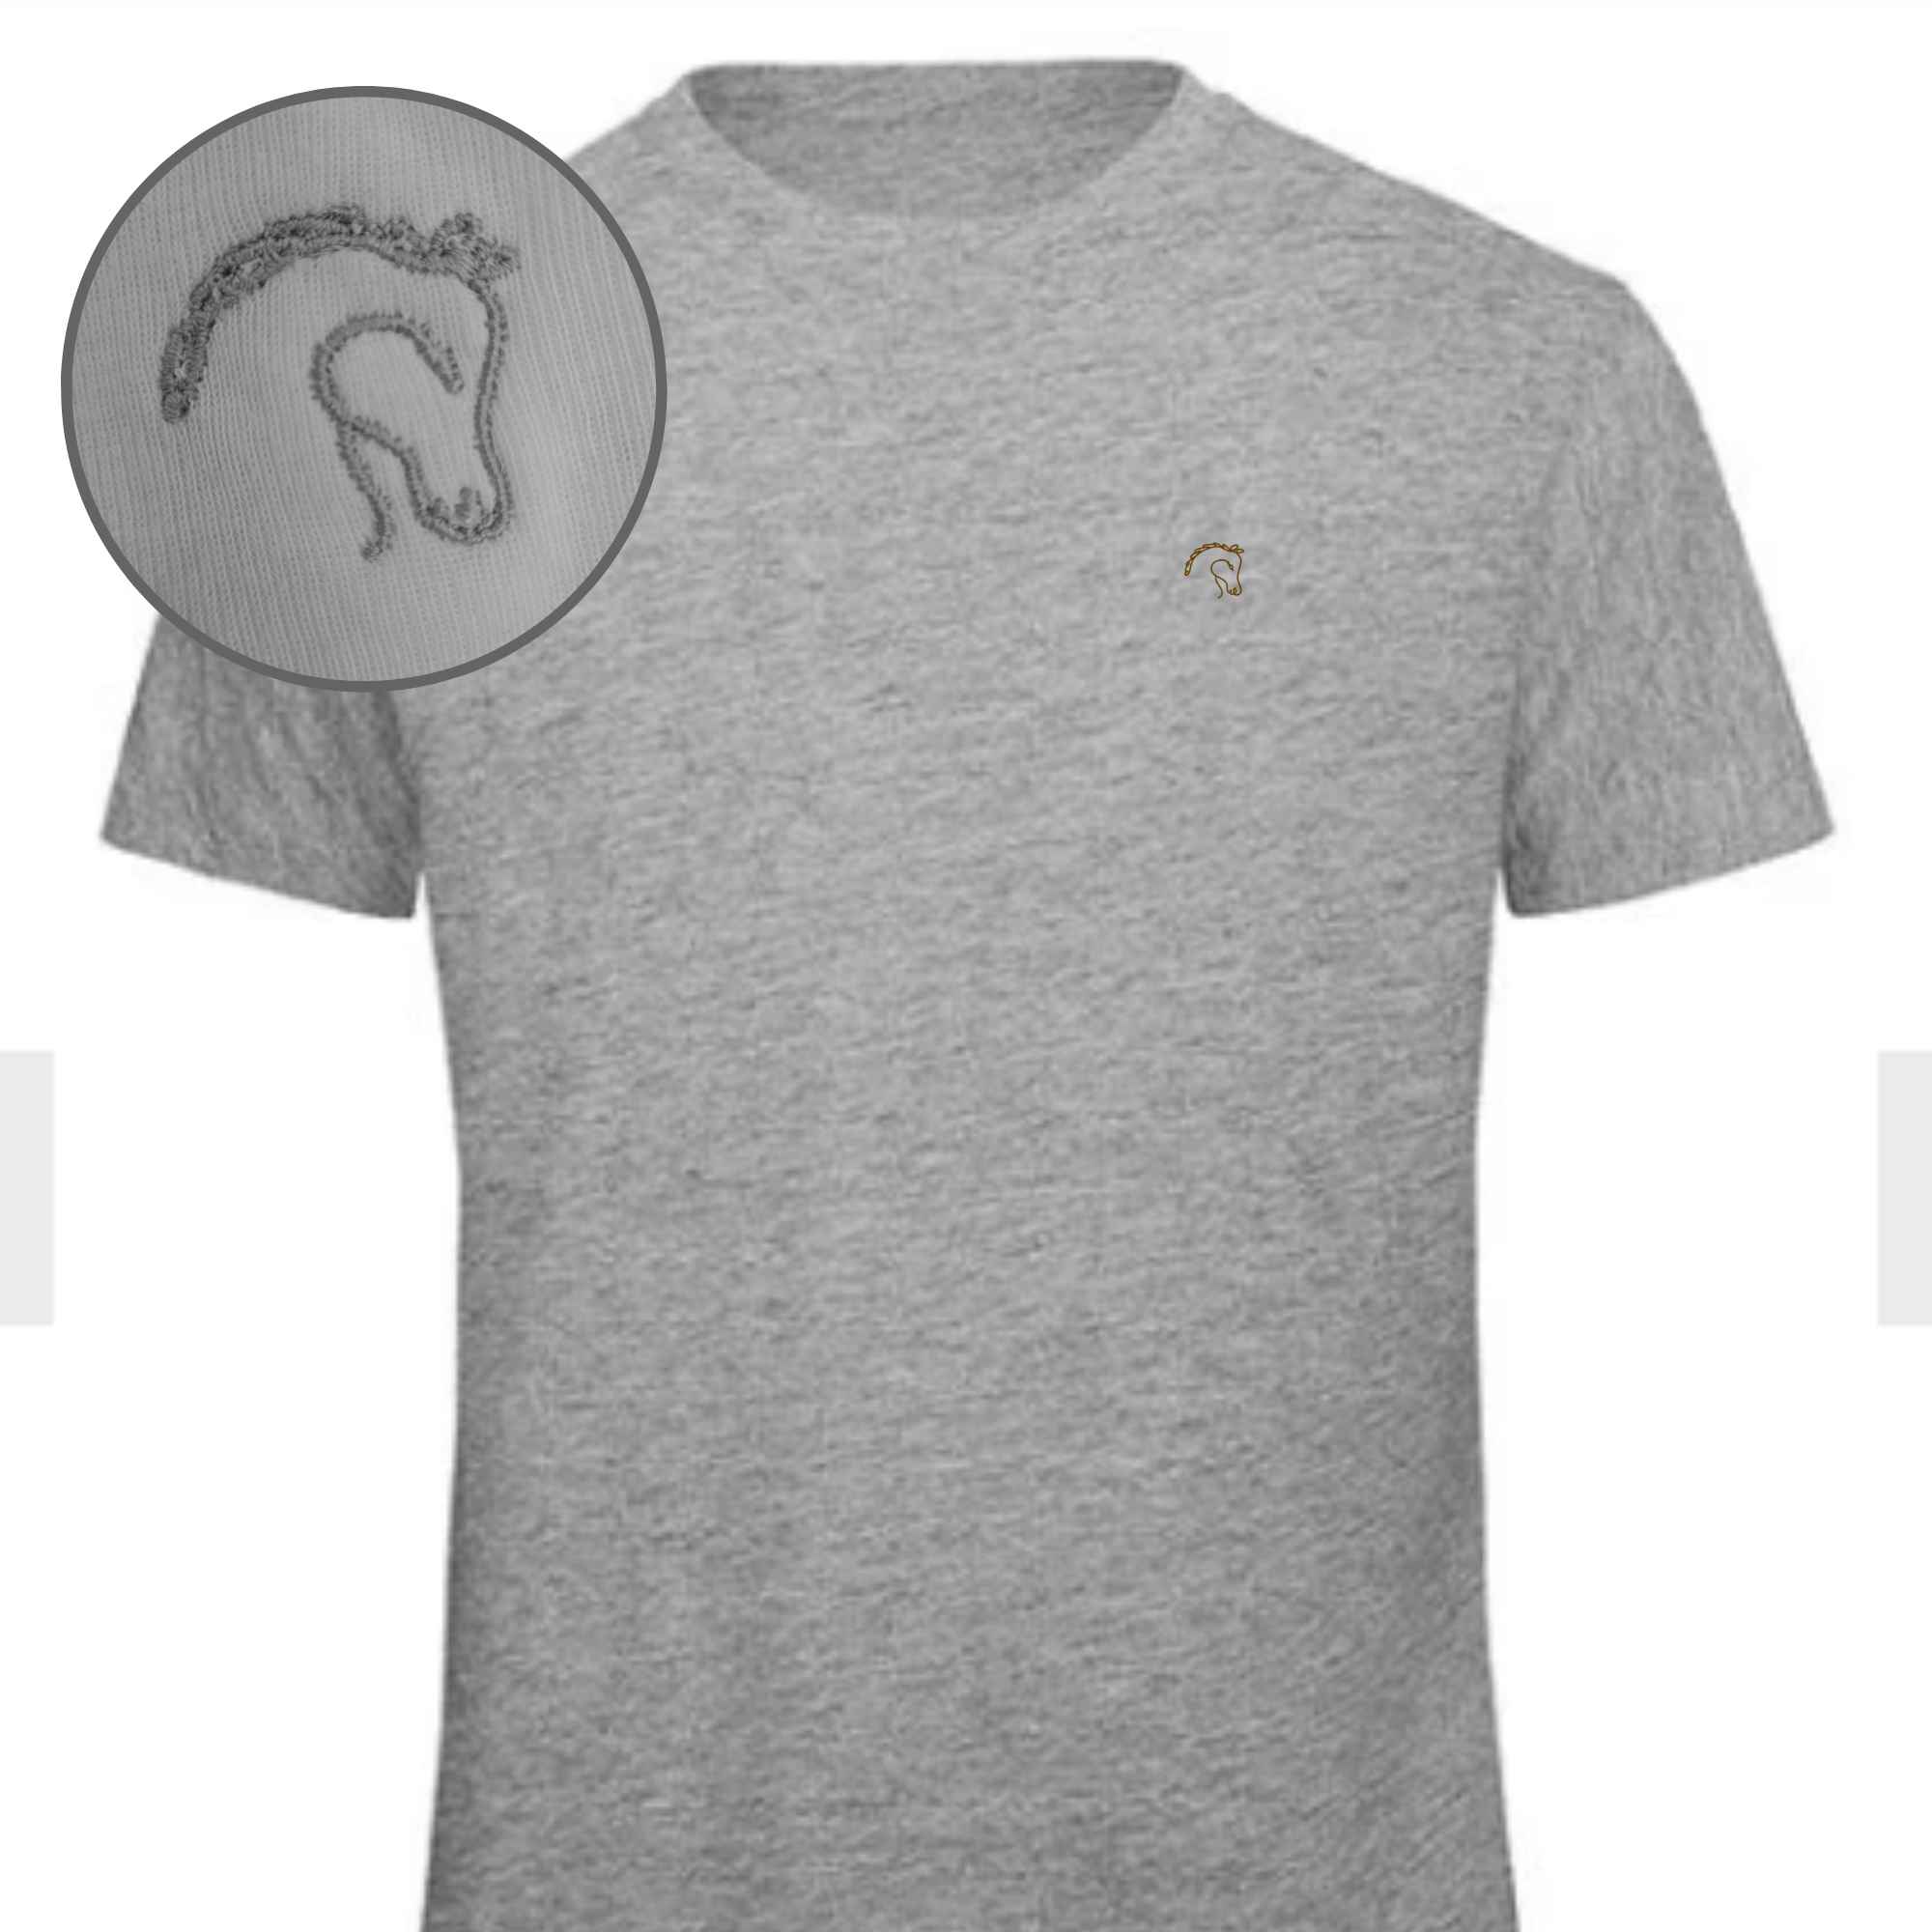 Hochwertiges T-Shirt mit Pferdekopf bestickt